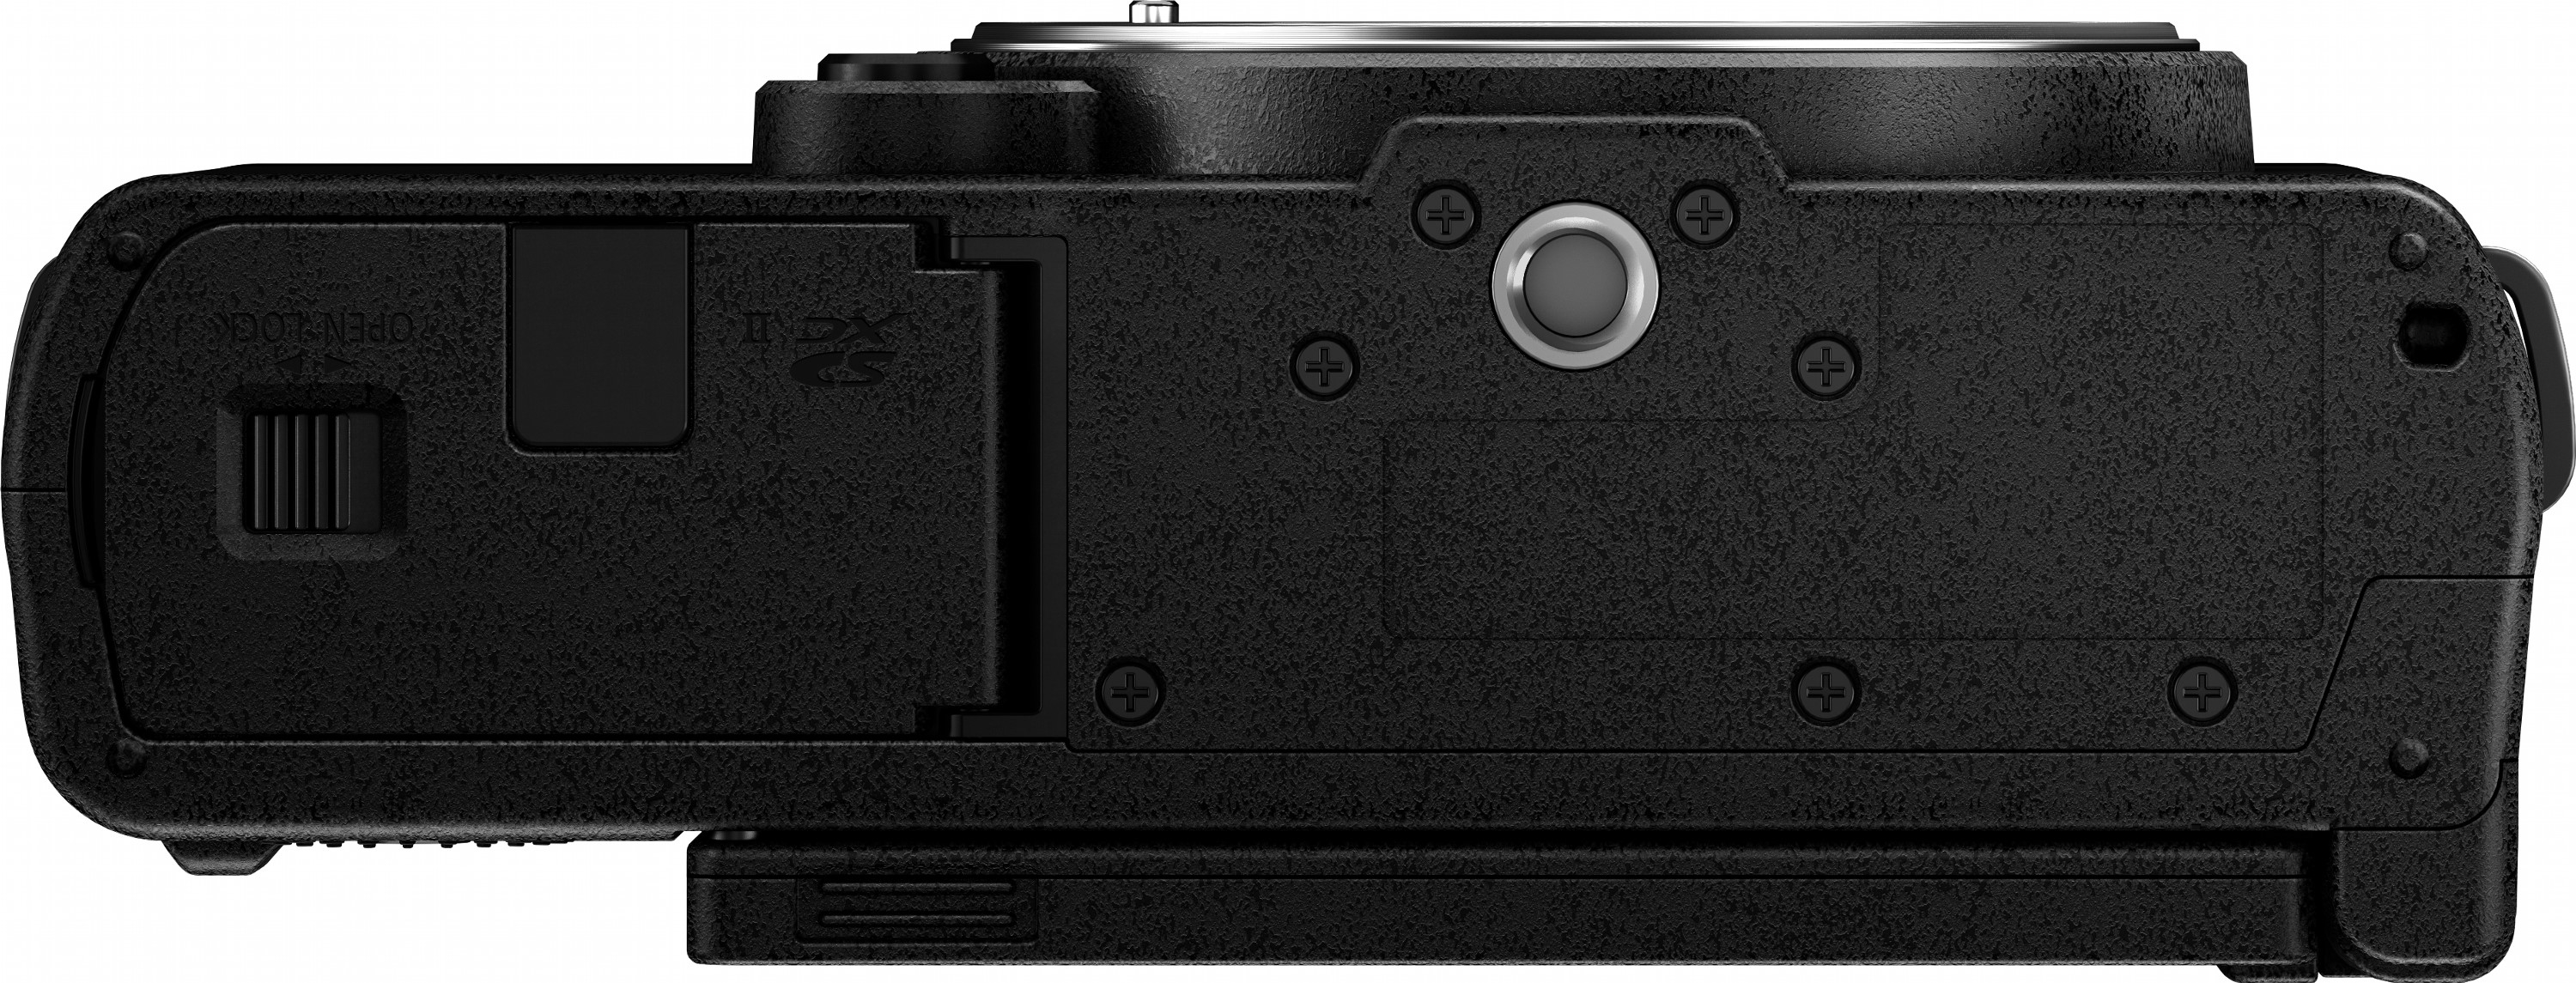 Фотоапарат Panasonic Lumix DC-S9 Body Jet Black (DC-S9E-K)фото10